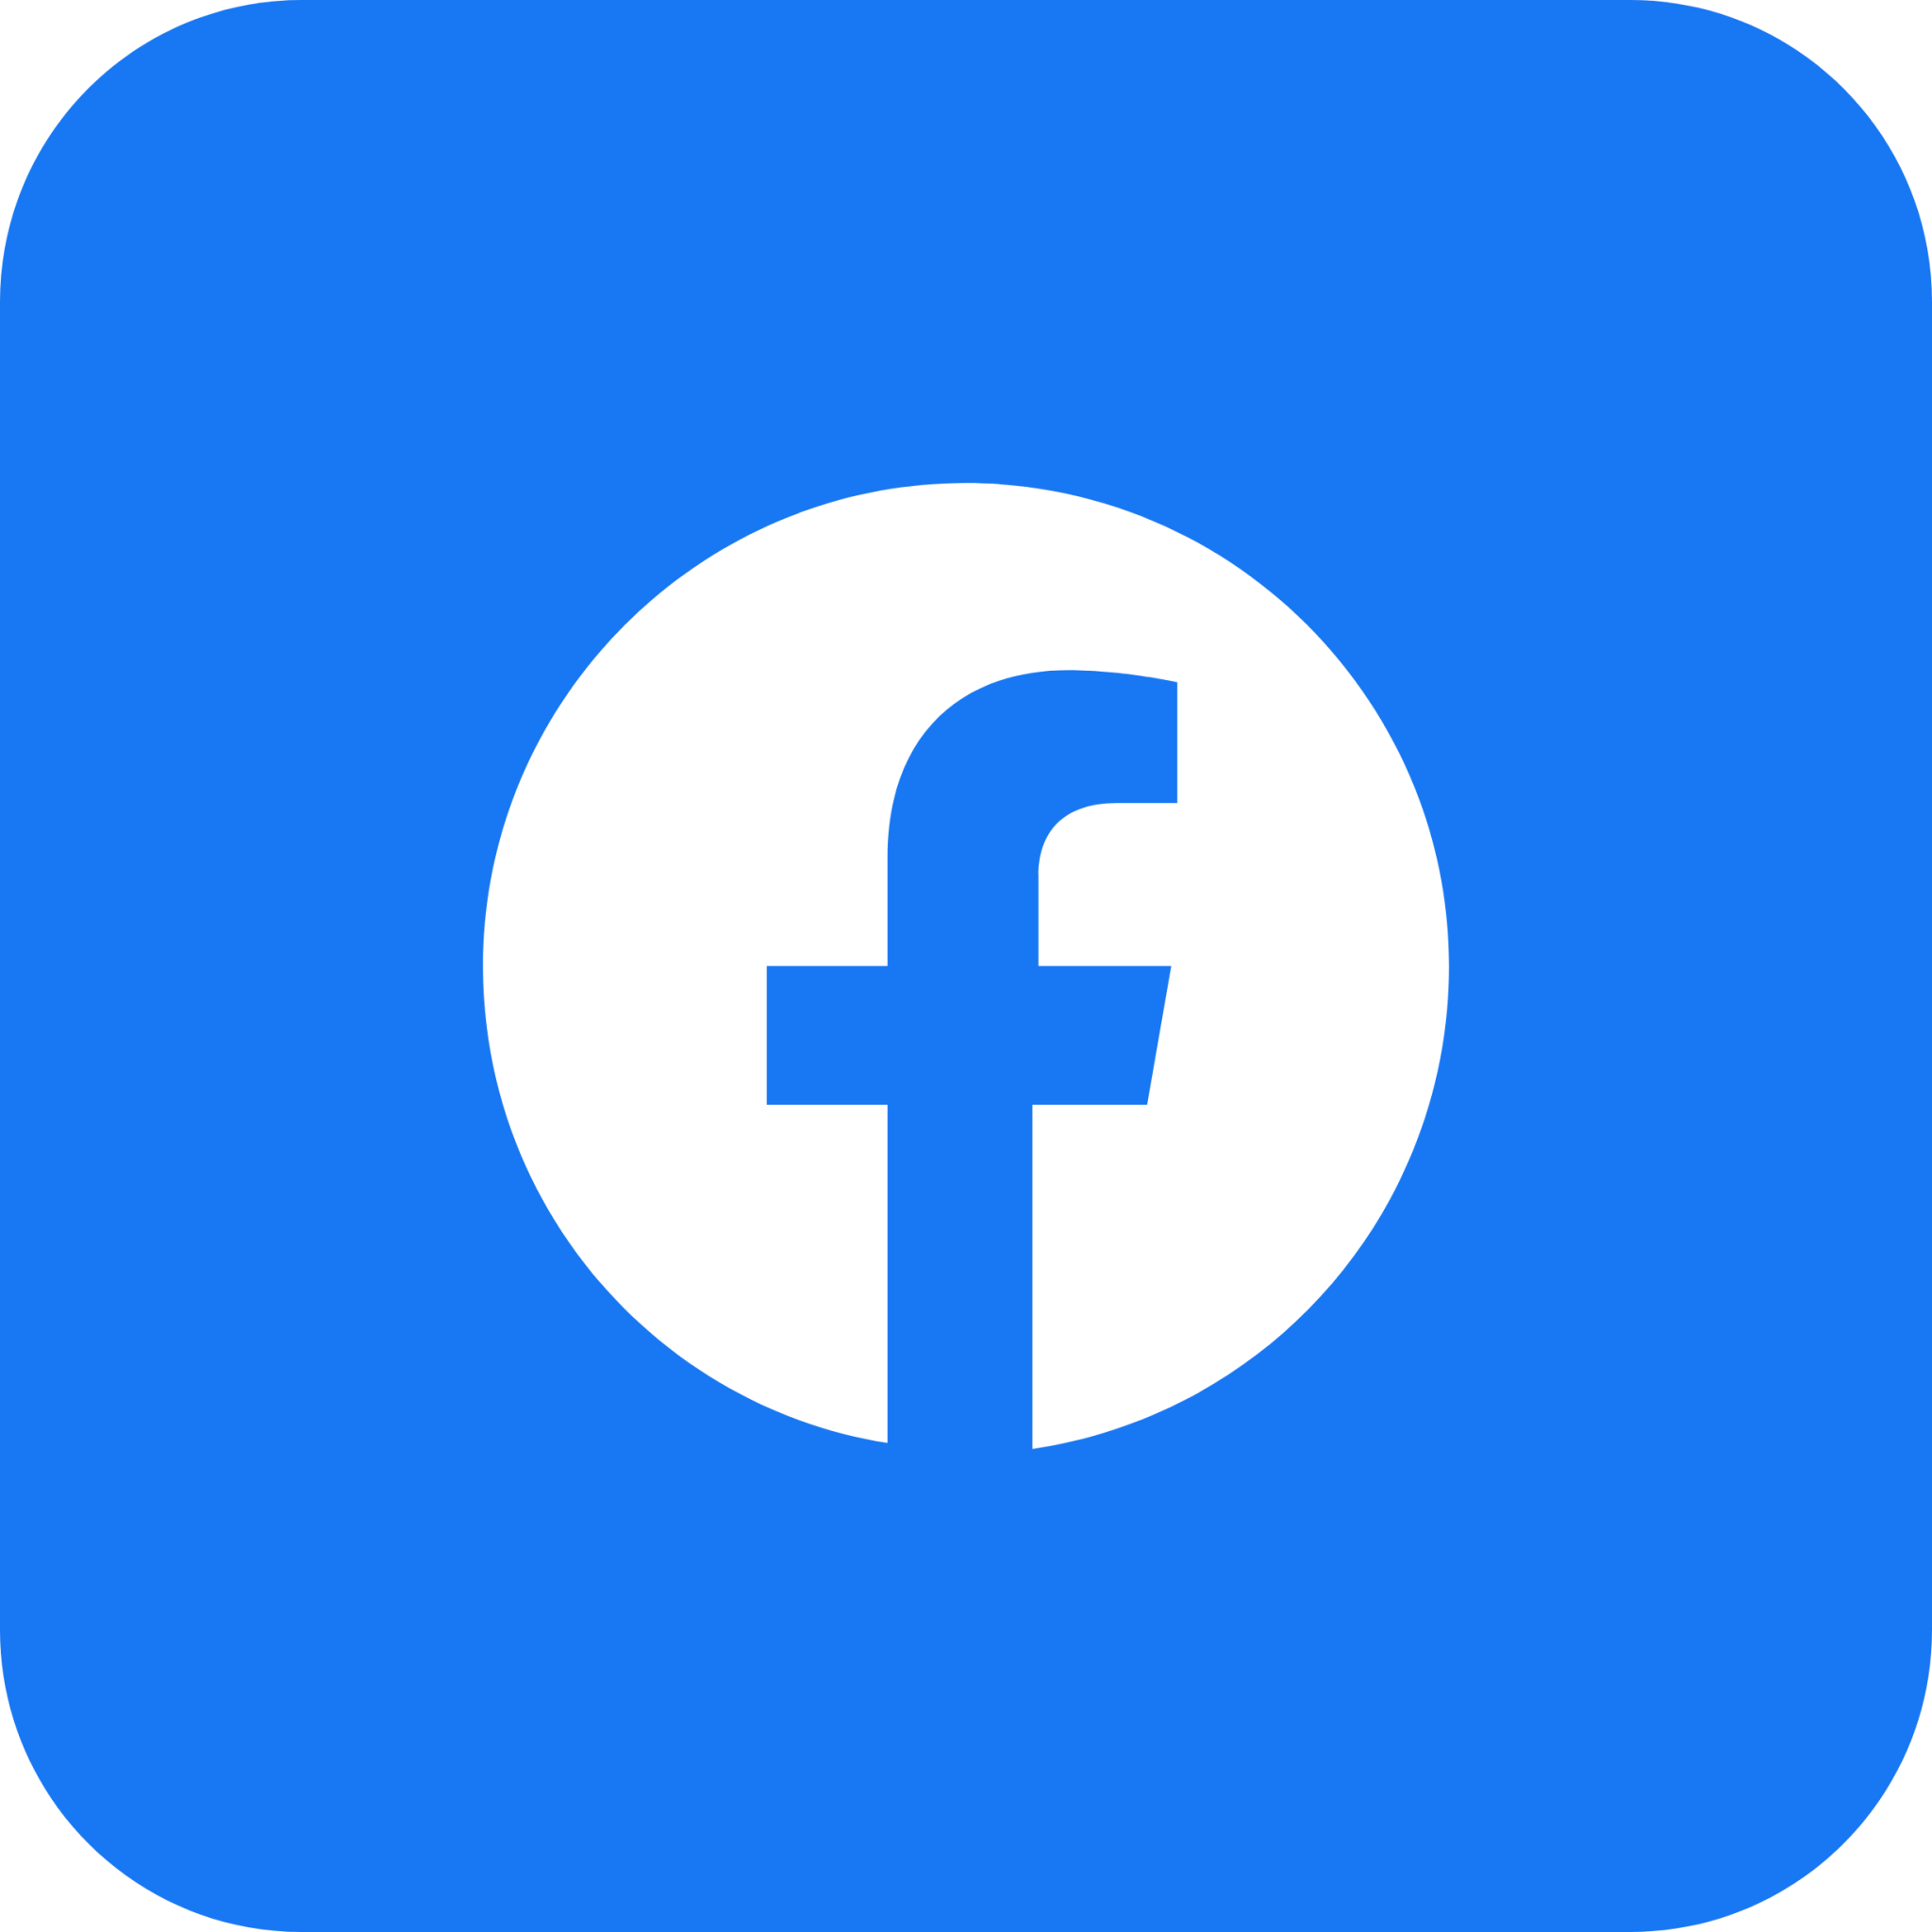 facebook" Icon - Tải xuống miễn phí – Iconduck